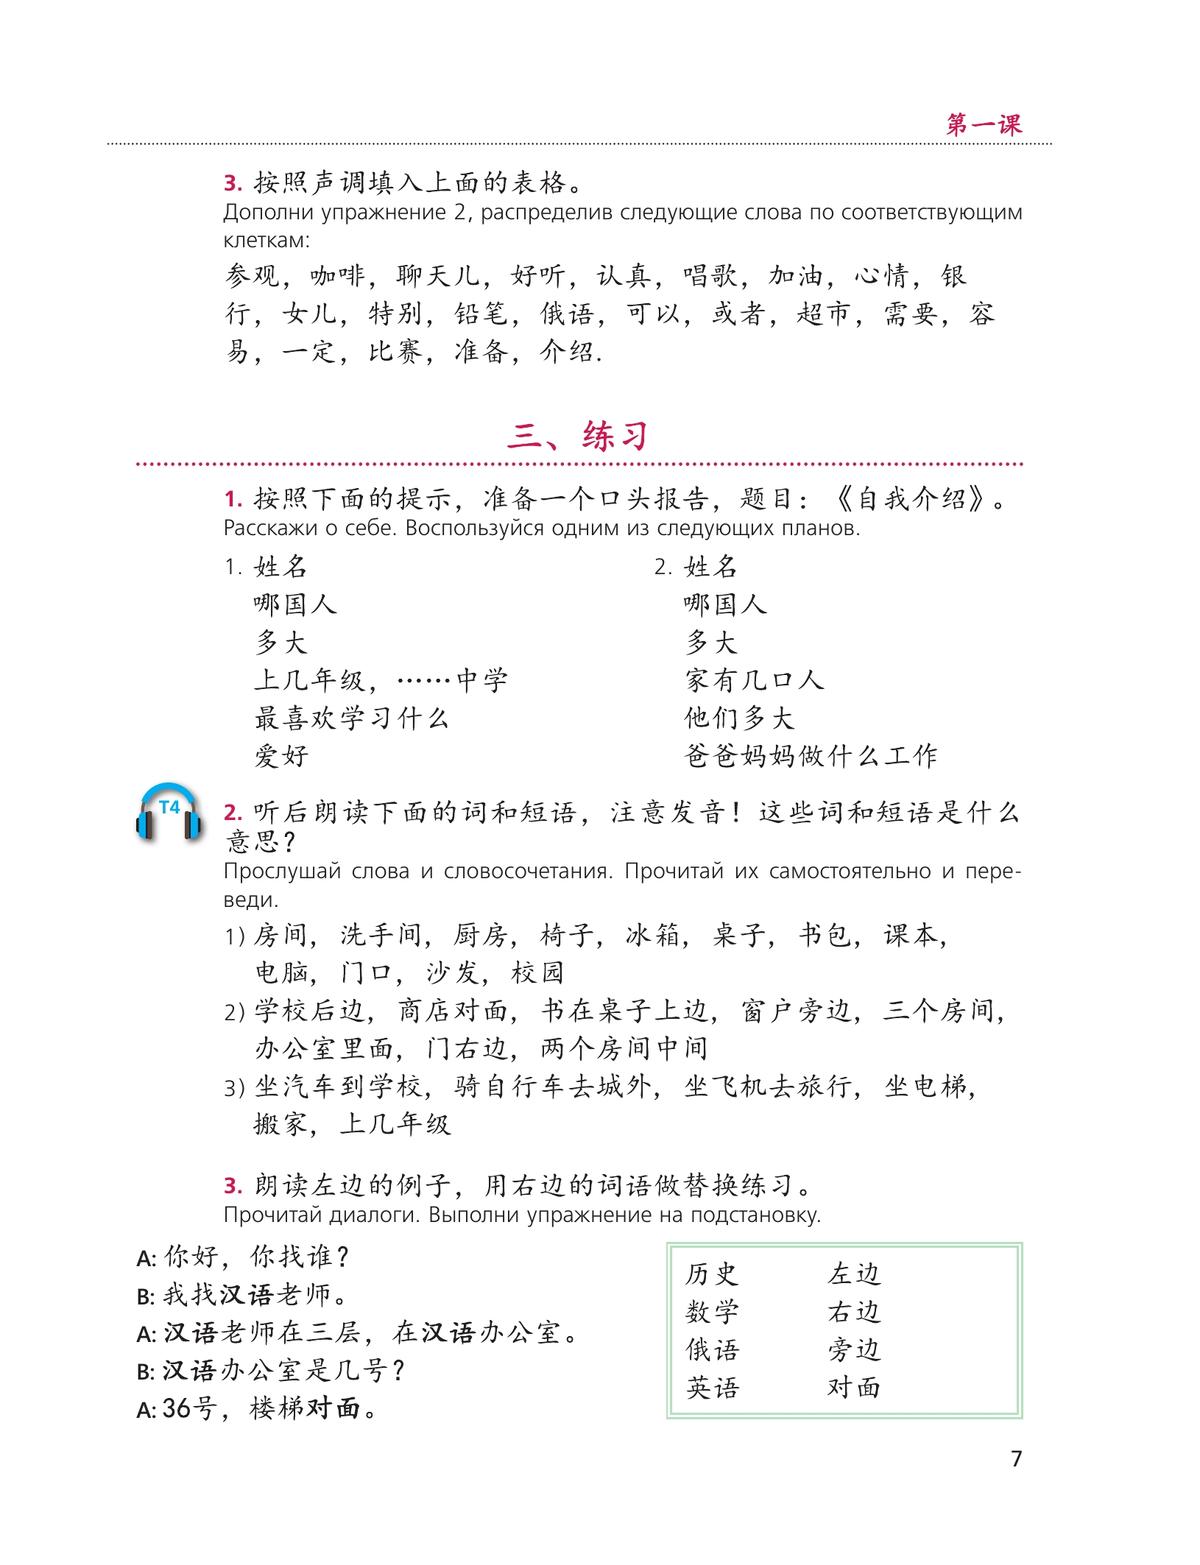 Китайский язык. Второй иностранный язык. 8 класс. Учебник 4